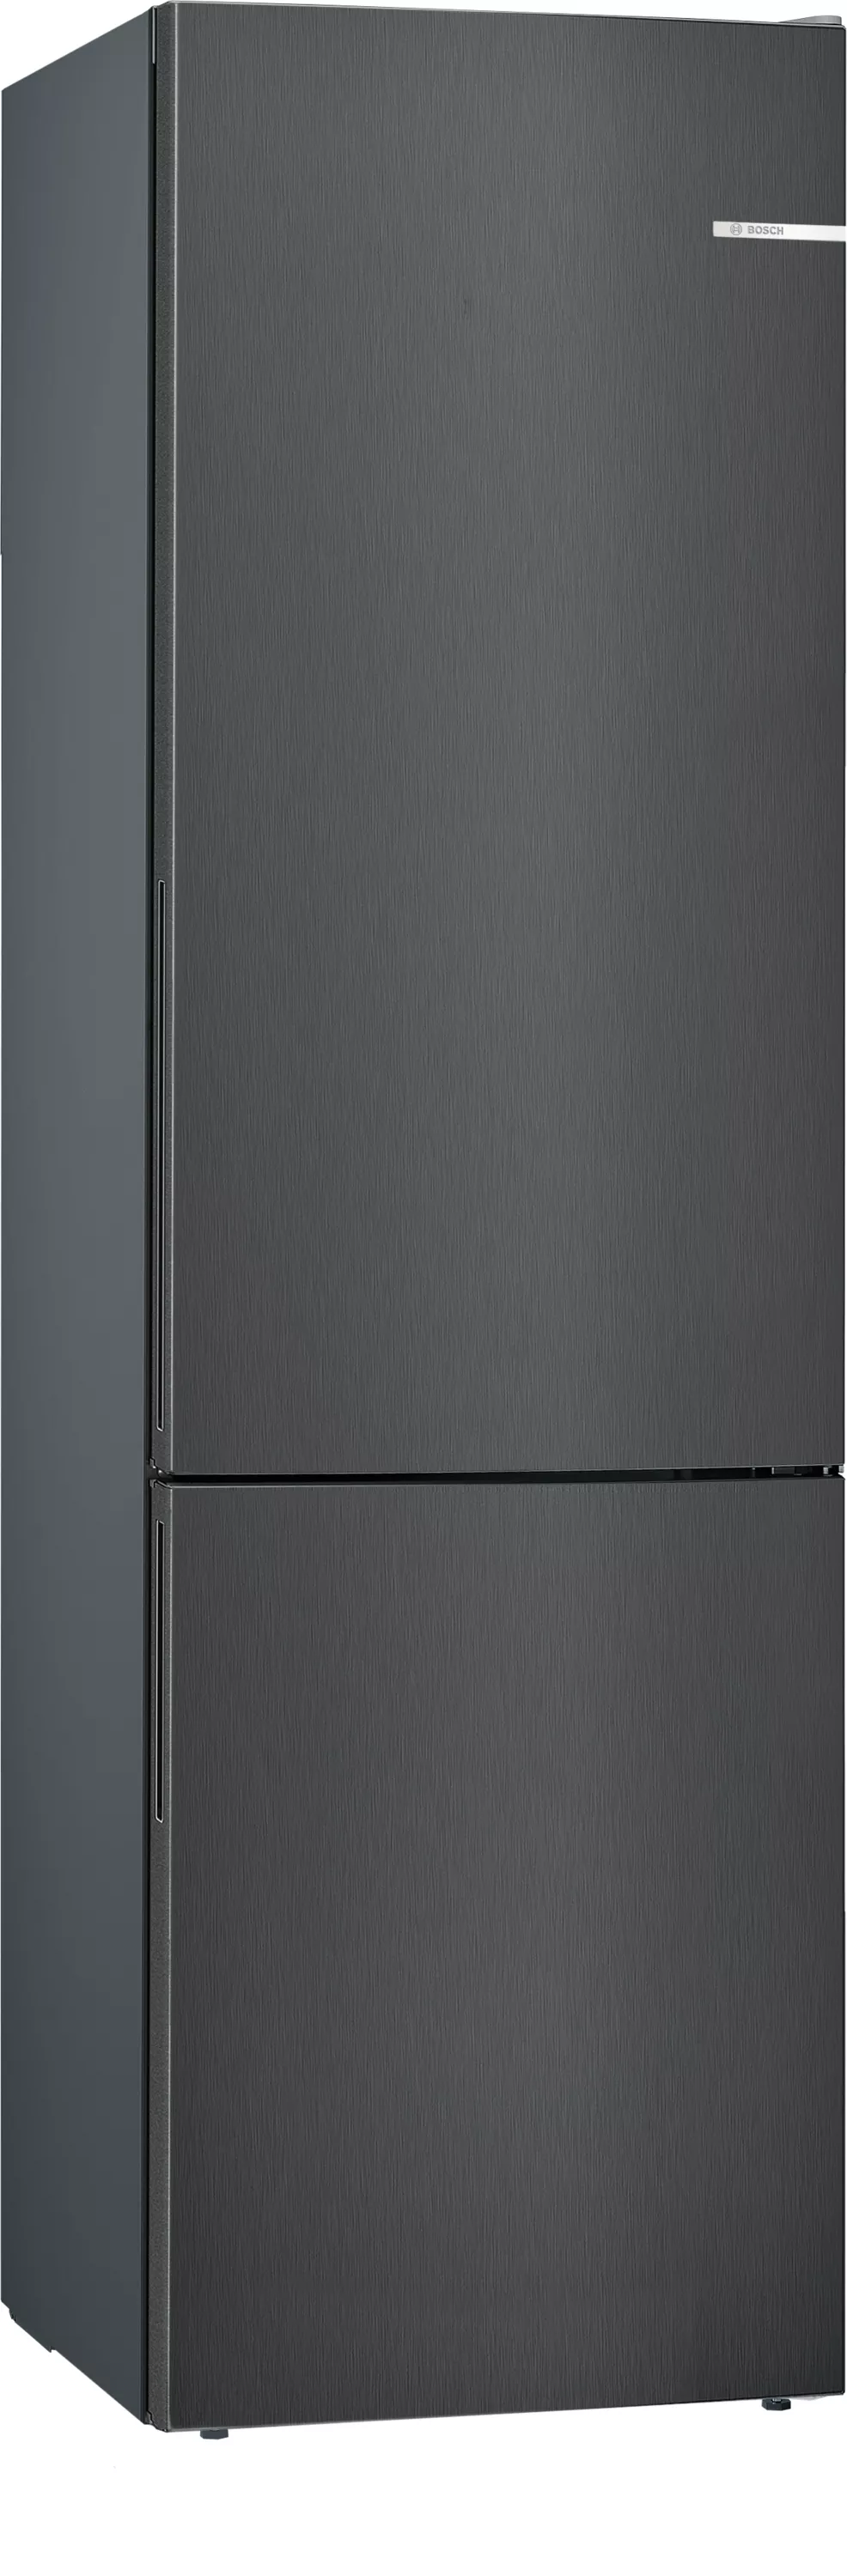 Bosch Serie 6, Freistehende Kühl-Gefrier-Kombination mit Gefrierbereich unten, 201 x 60 cm, Edelstahl schwarz, KGE398XBA